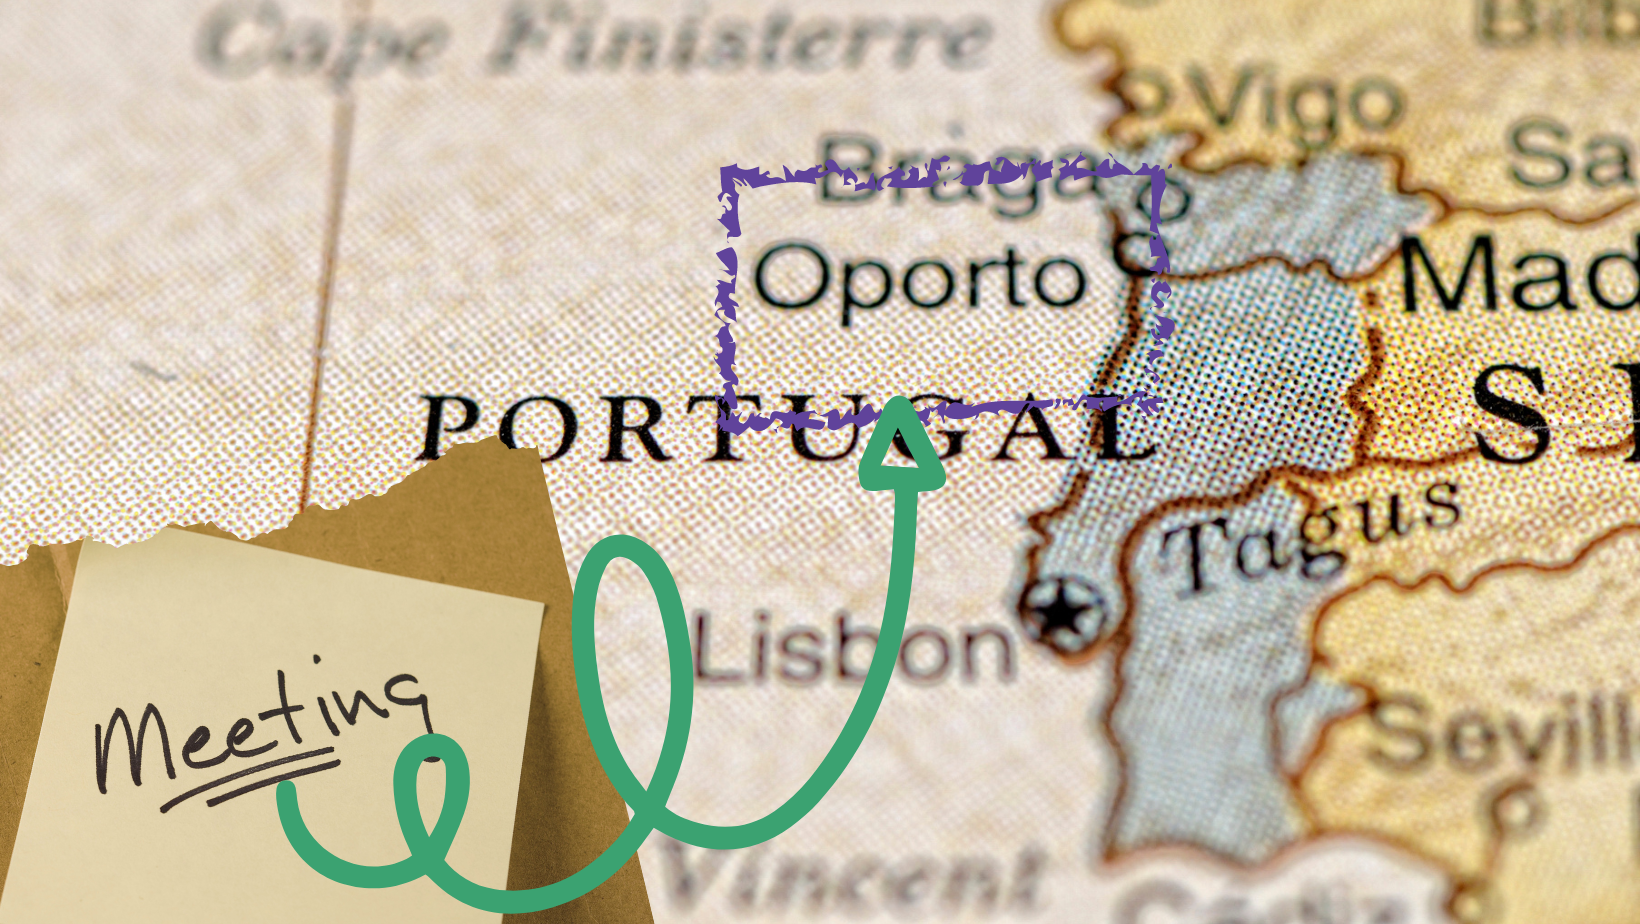 Rencontre des Amis européens au Portugal